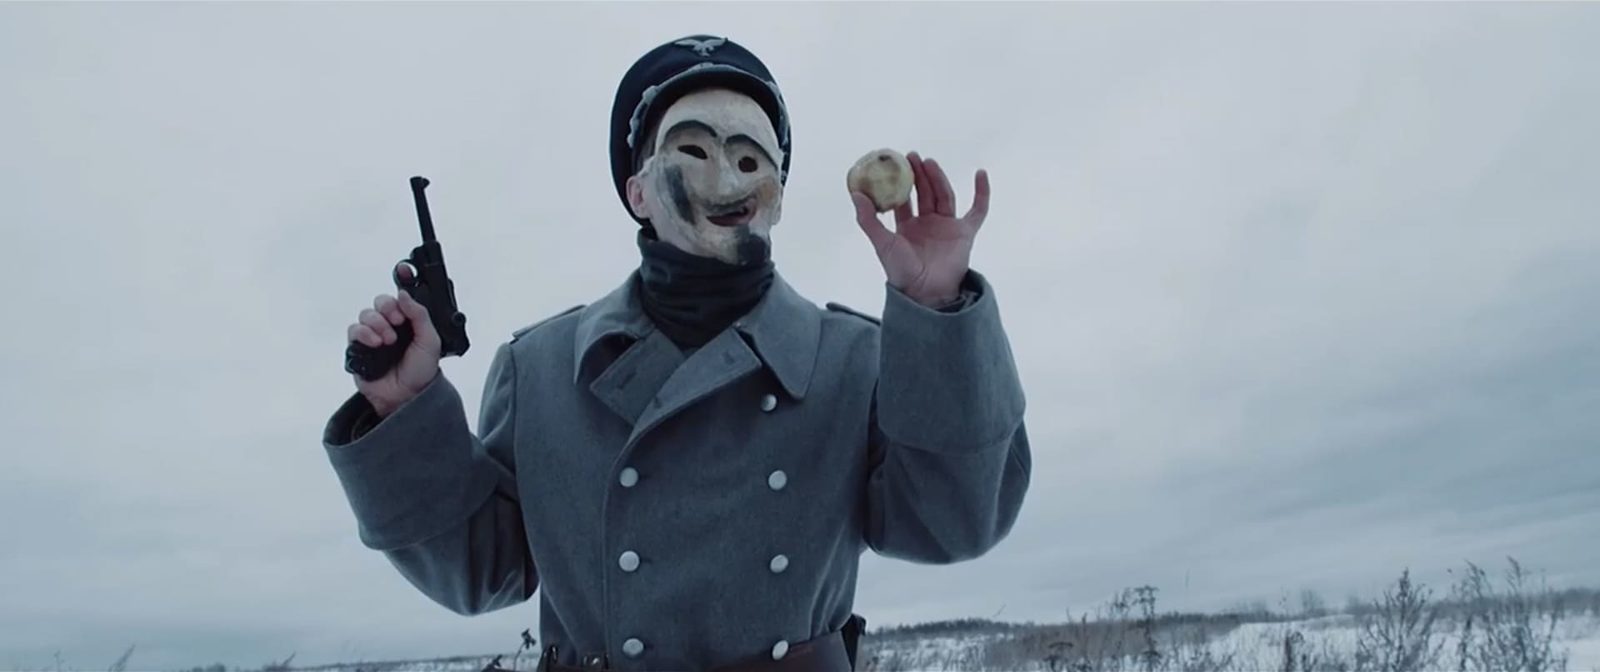 «Снаряды для девочки» Антона Мамыкина откроют телеграм-выставку российских короткометражек